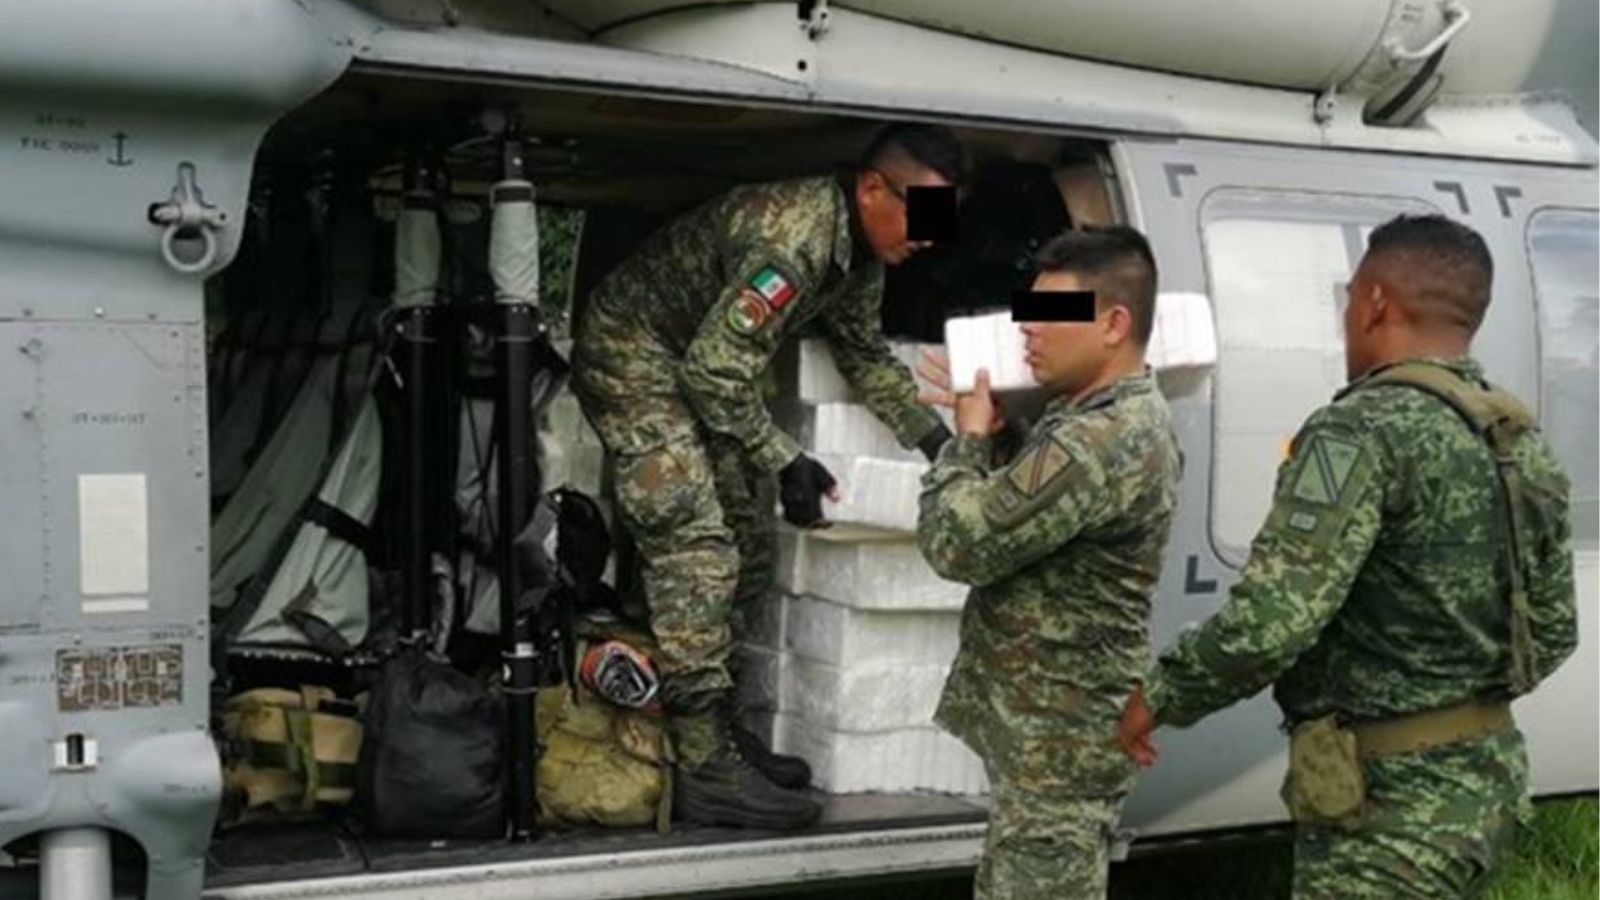 SEDENA asegura 340 kilos de cocaína. Ejército mexicano Chiapas